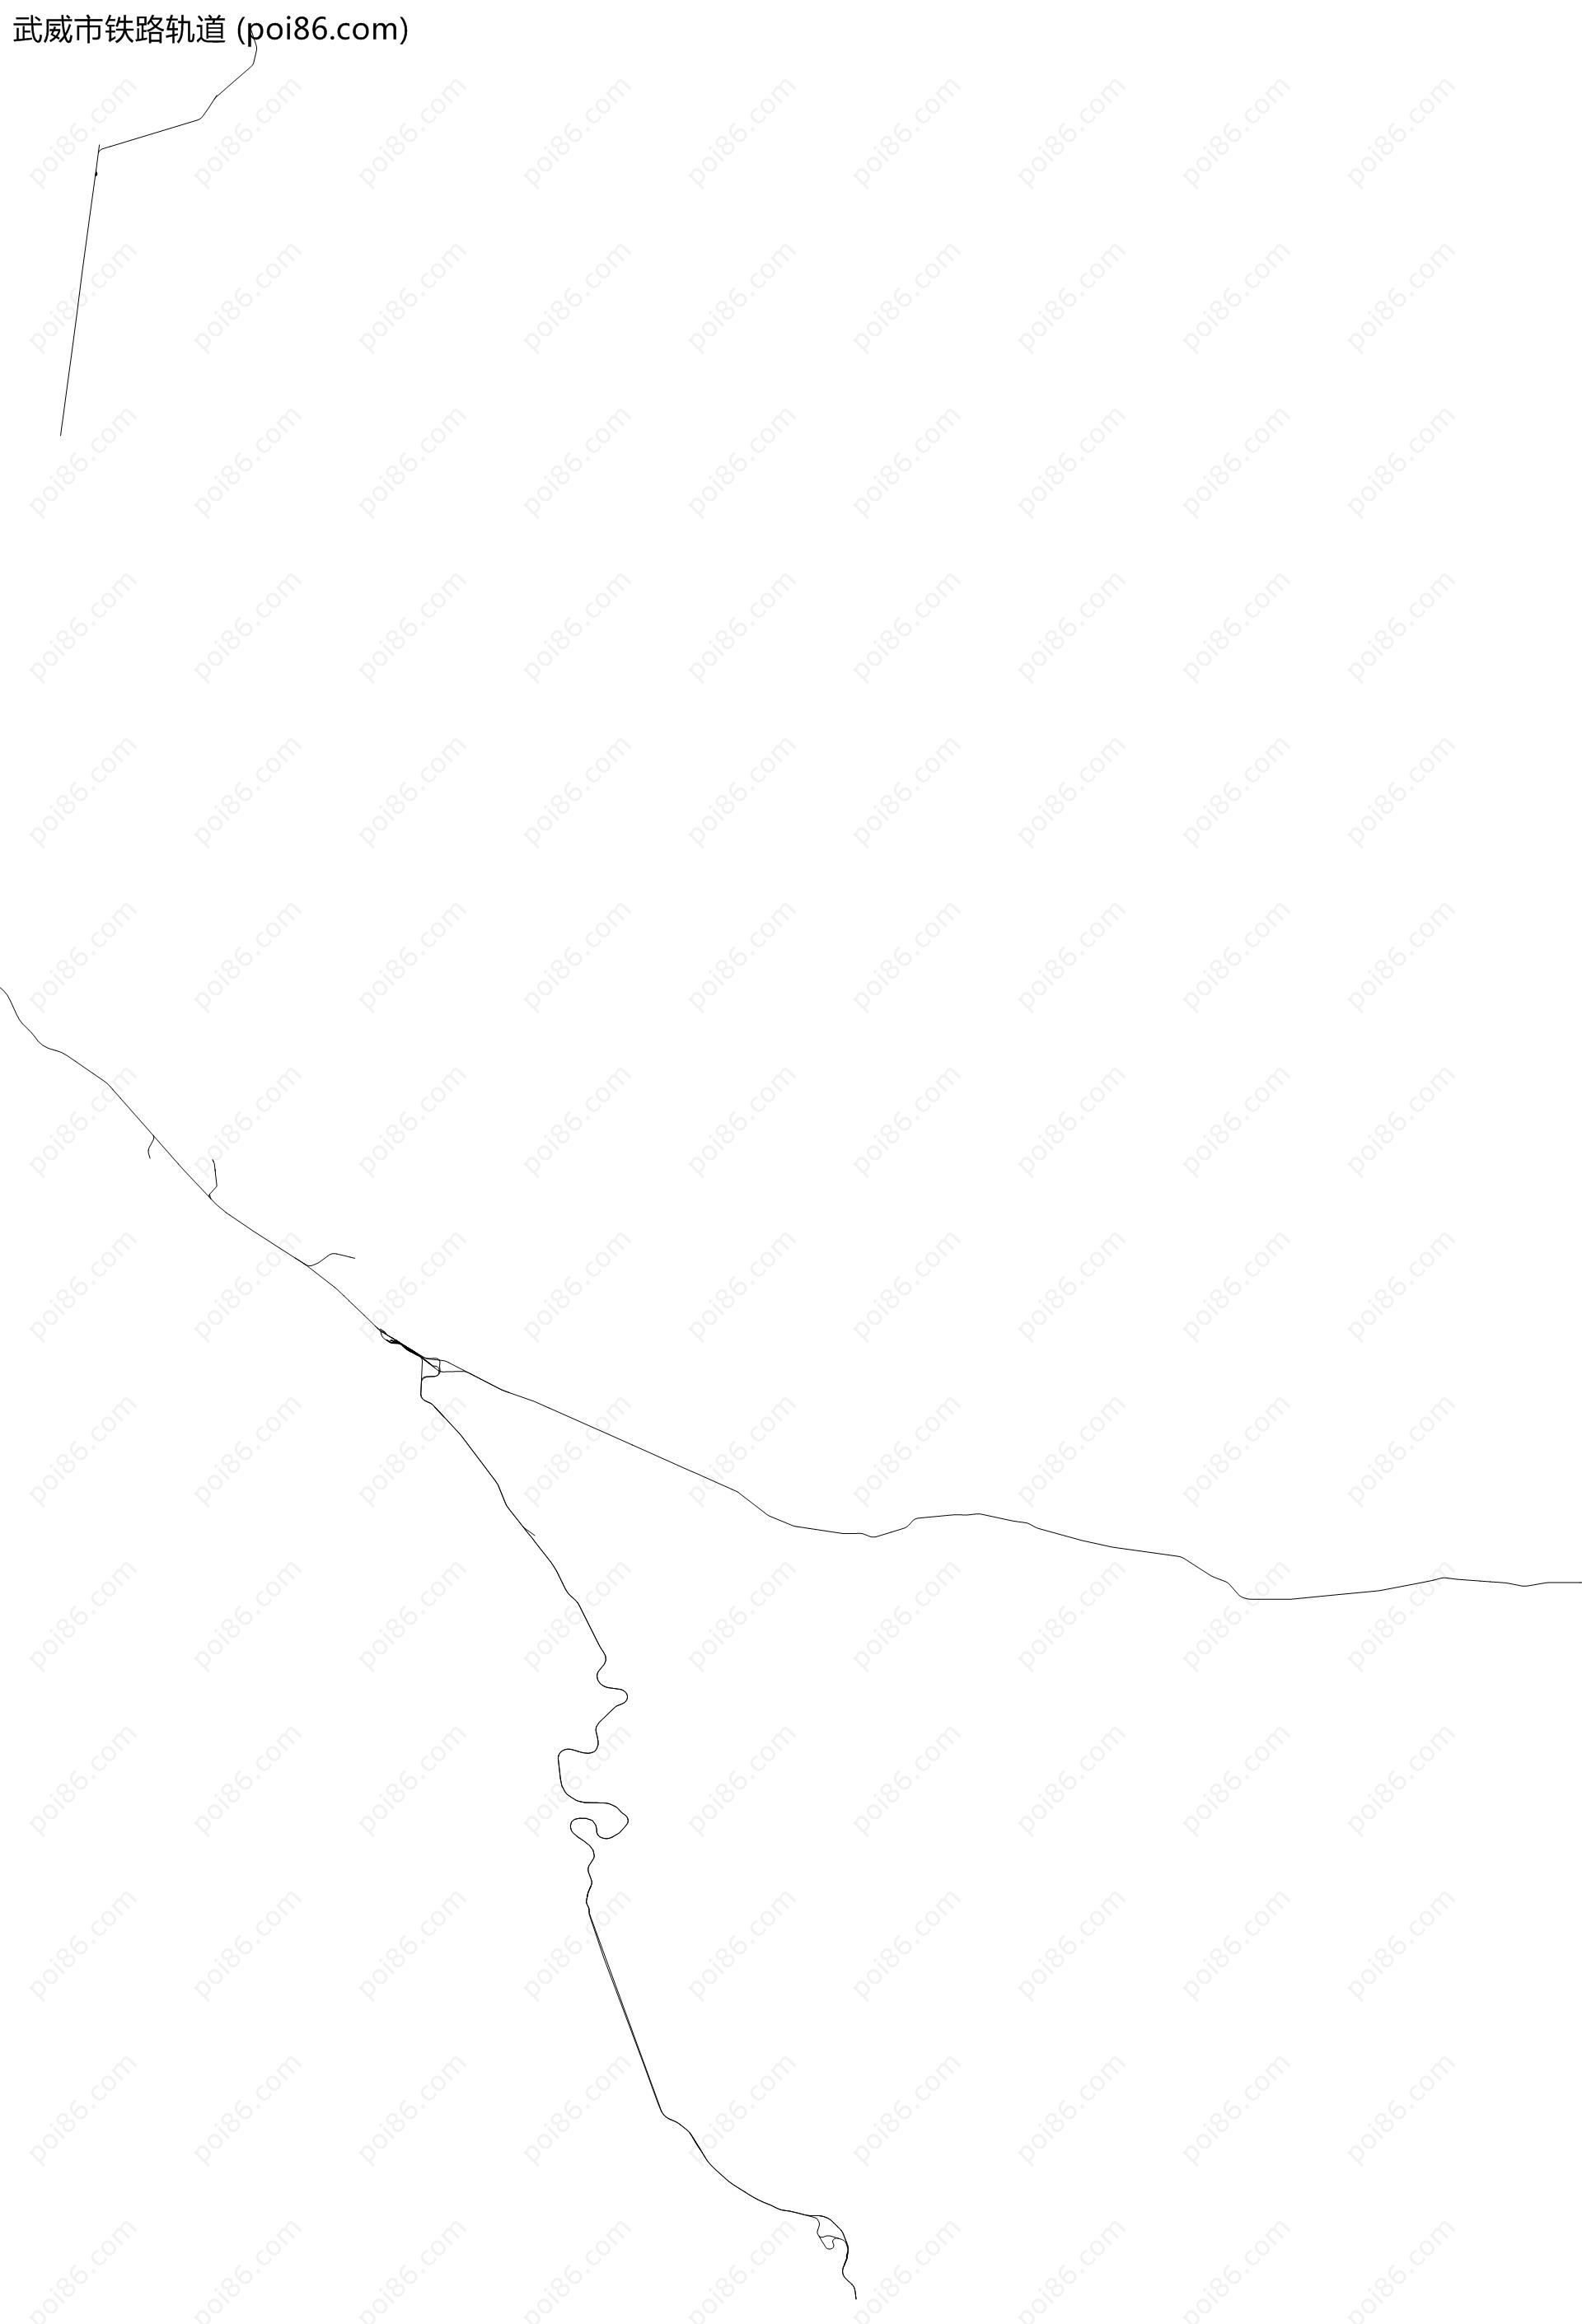 武威市铁路轨道地图